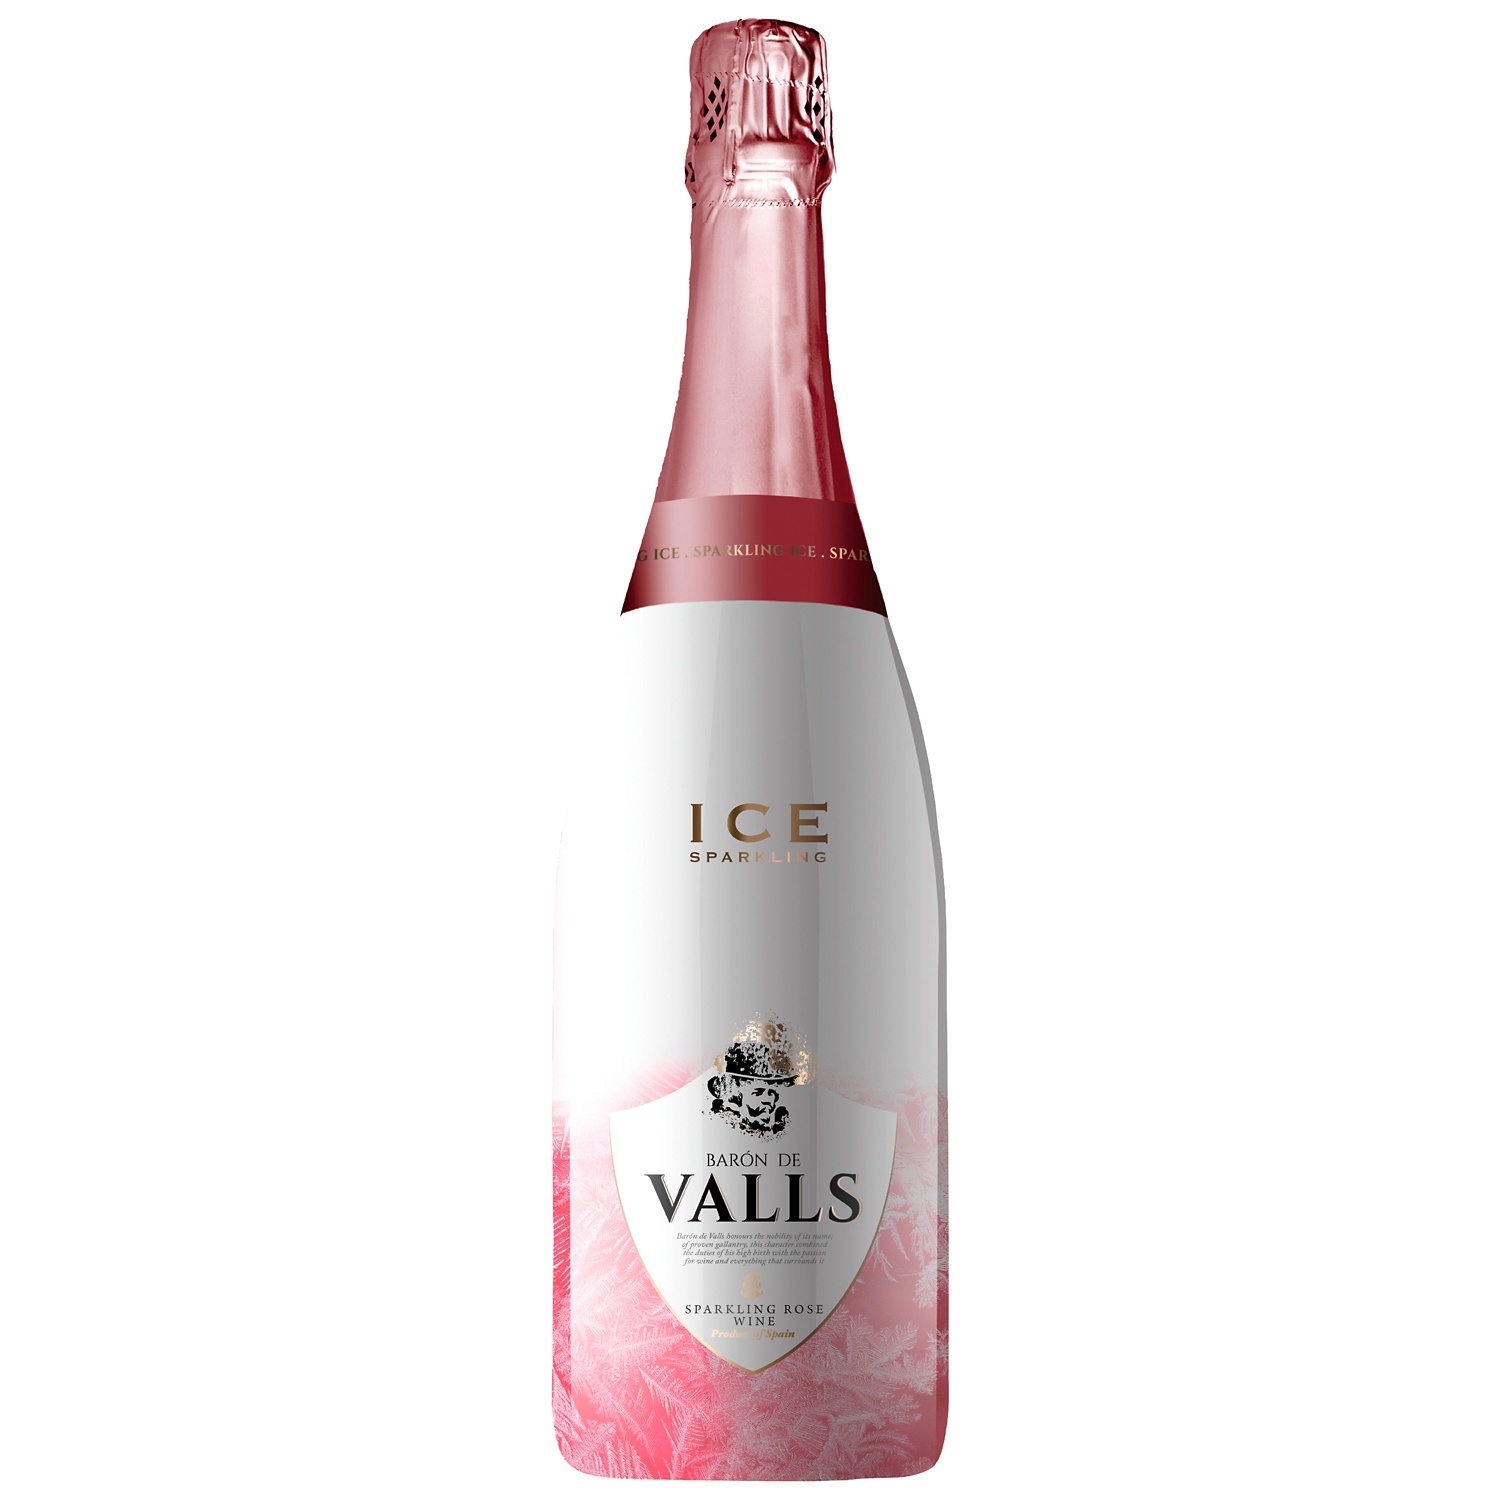 Baron de Valls Ice Rosé